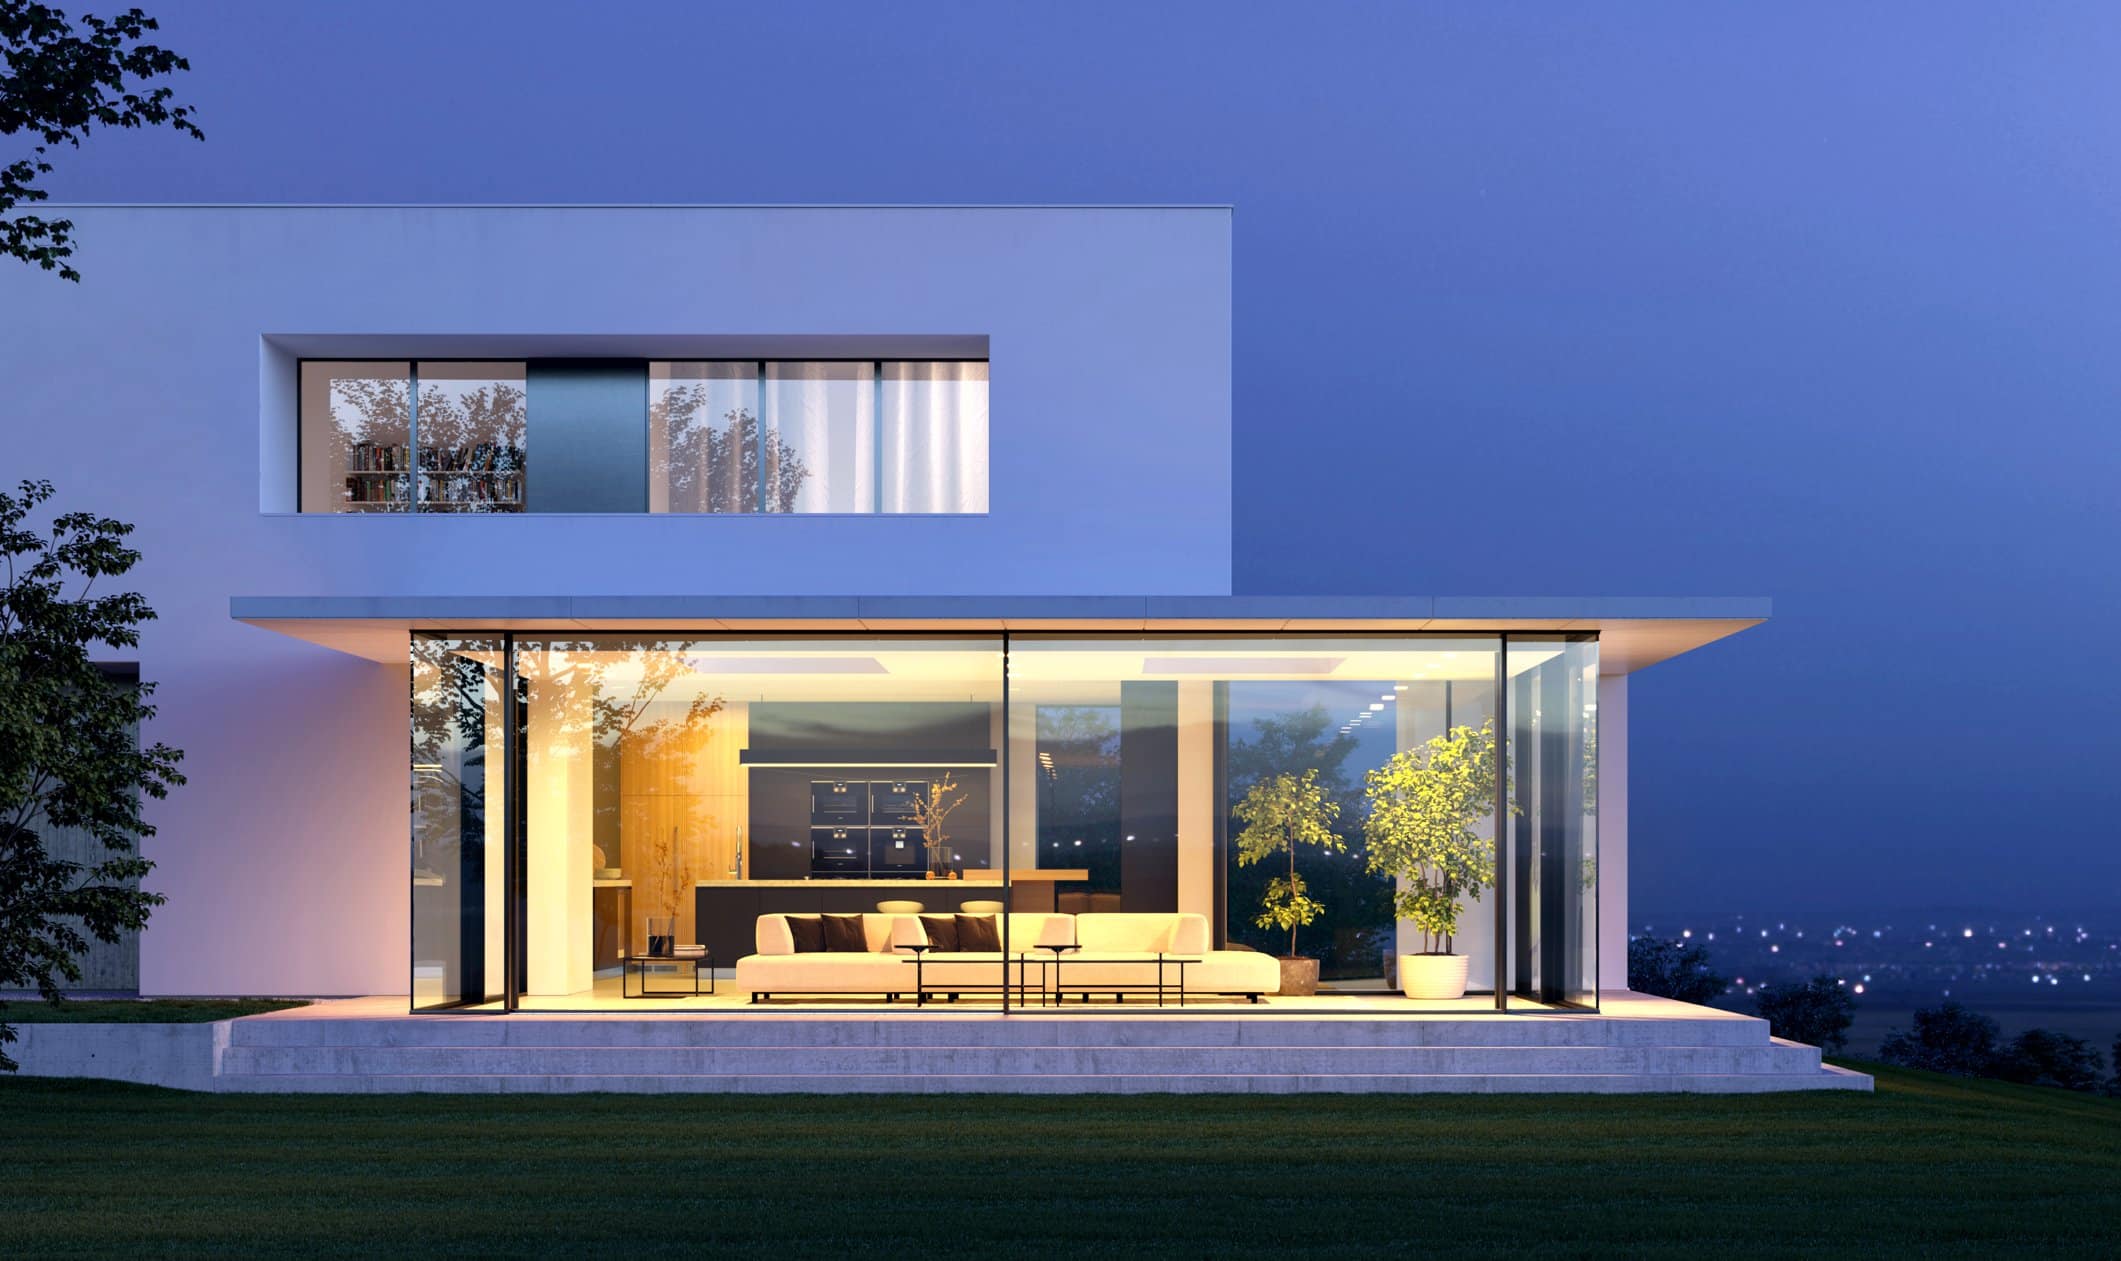 Solarlux zeigt ein modernes, weißes Haus bei Nacht, sodass man die Beleuchtung der Glasfaltwand gut erkennen kann.